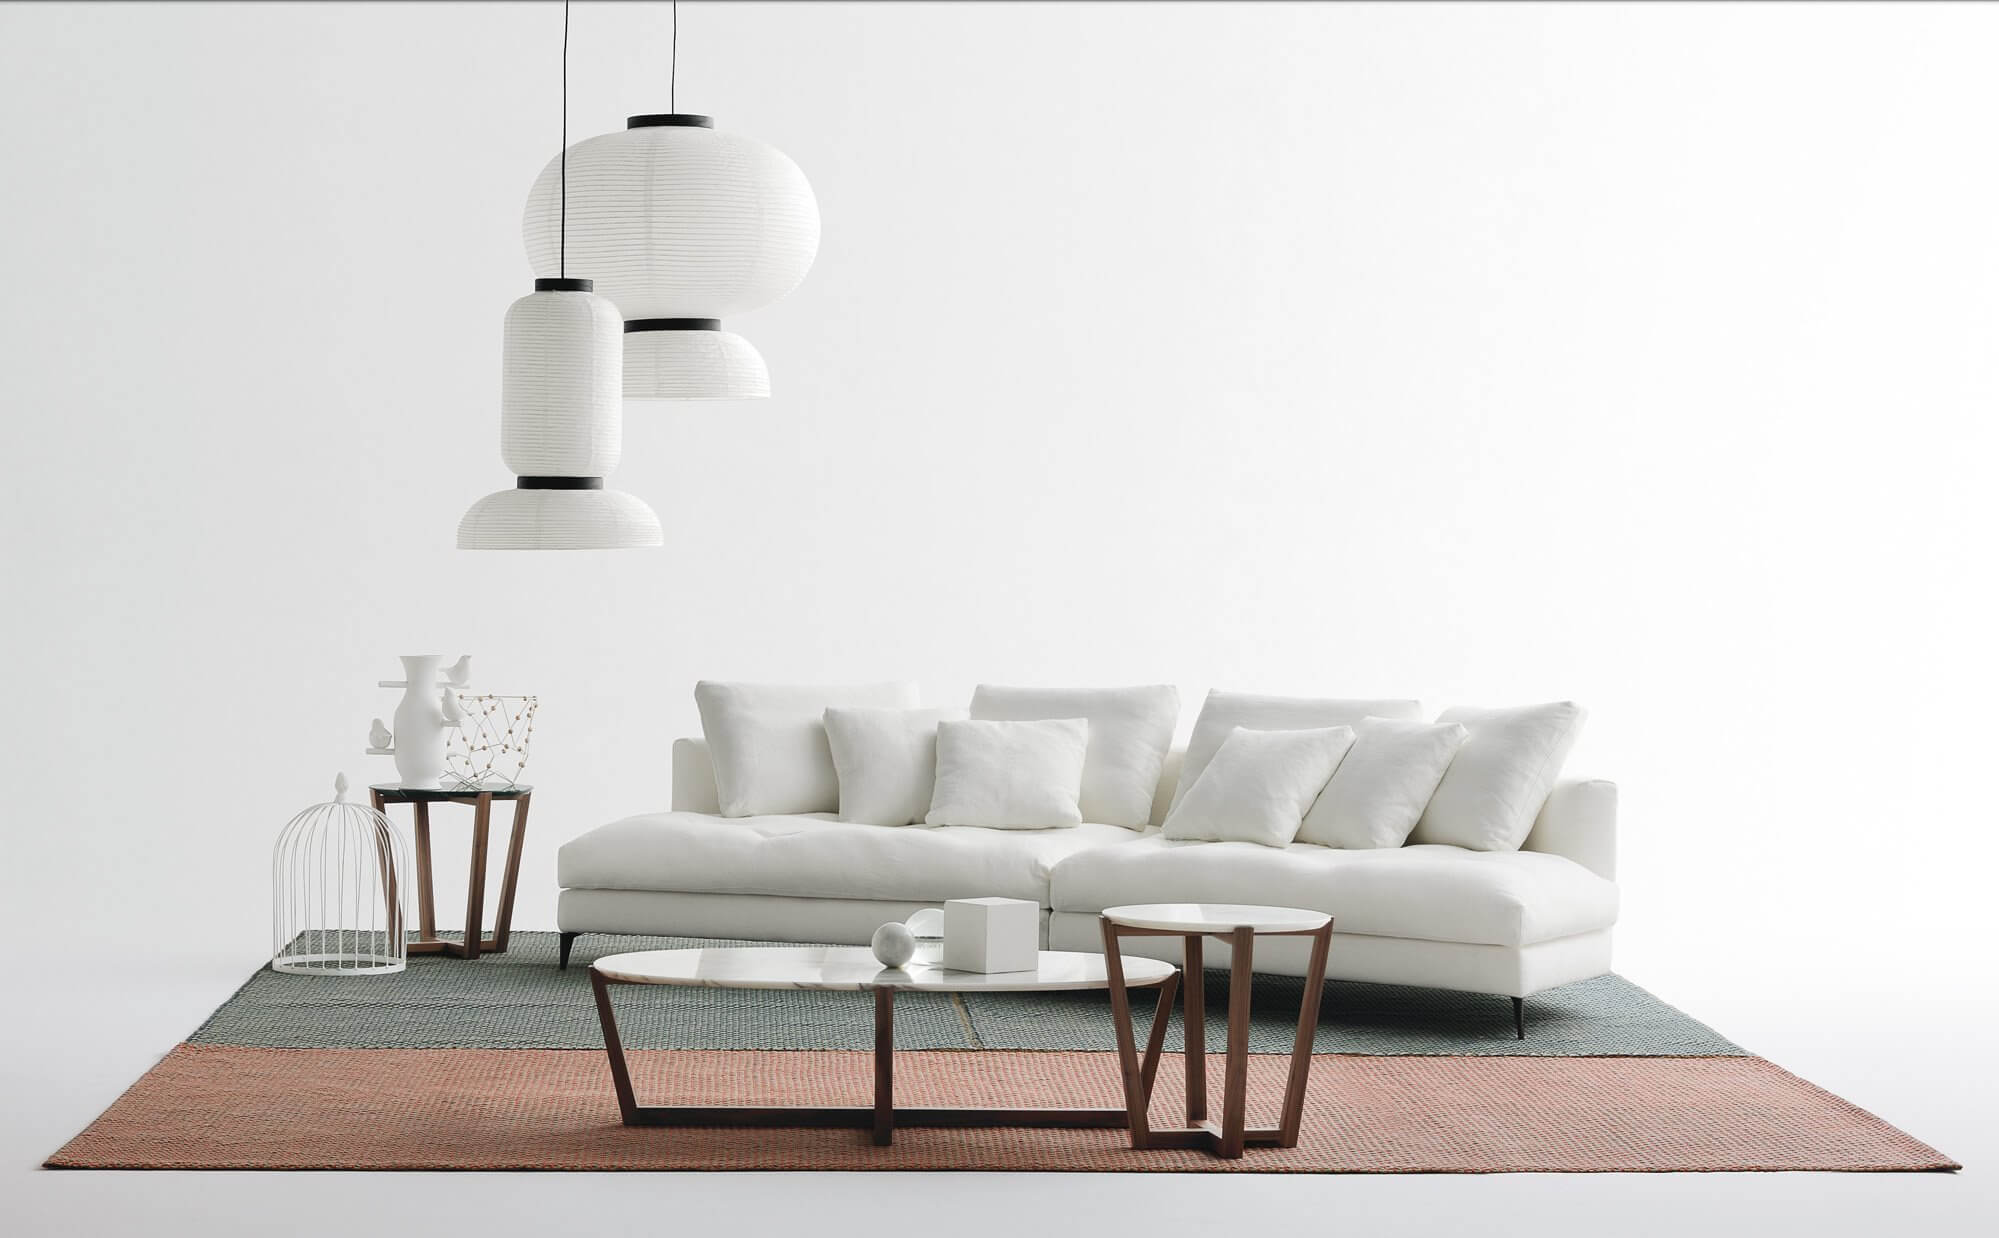 Az Alcove design kanapé kialakítása olyan, hogy csak kevés elemében találunk párhuzamot.